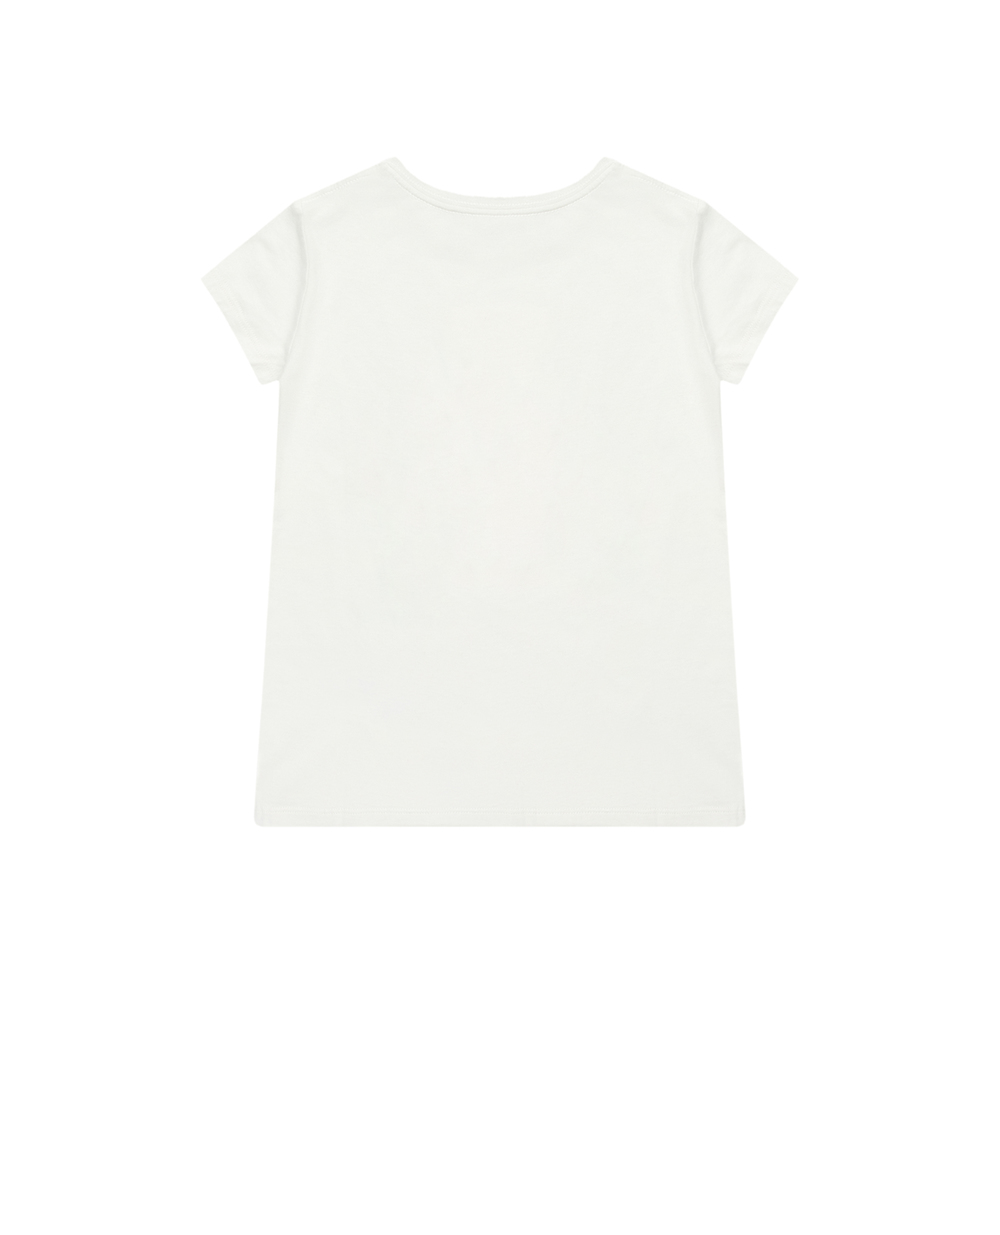 Детская футболка Polo Bear Polo Ralph Lauren Kids 312901142001, белый цвет • Купить в интернет-магазине Kameron